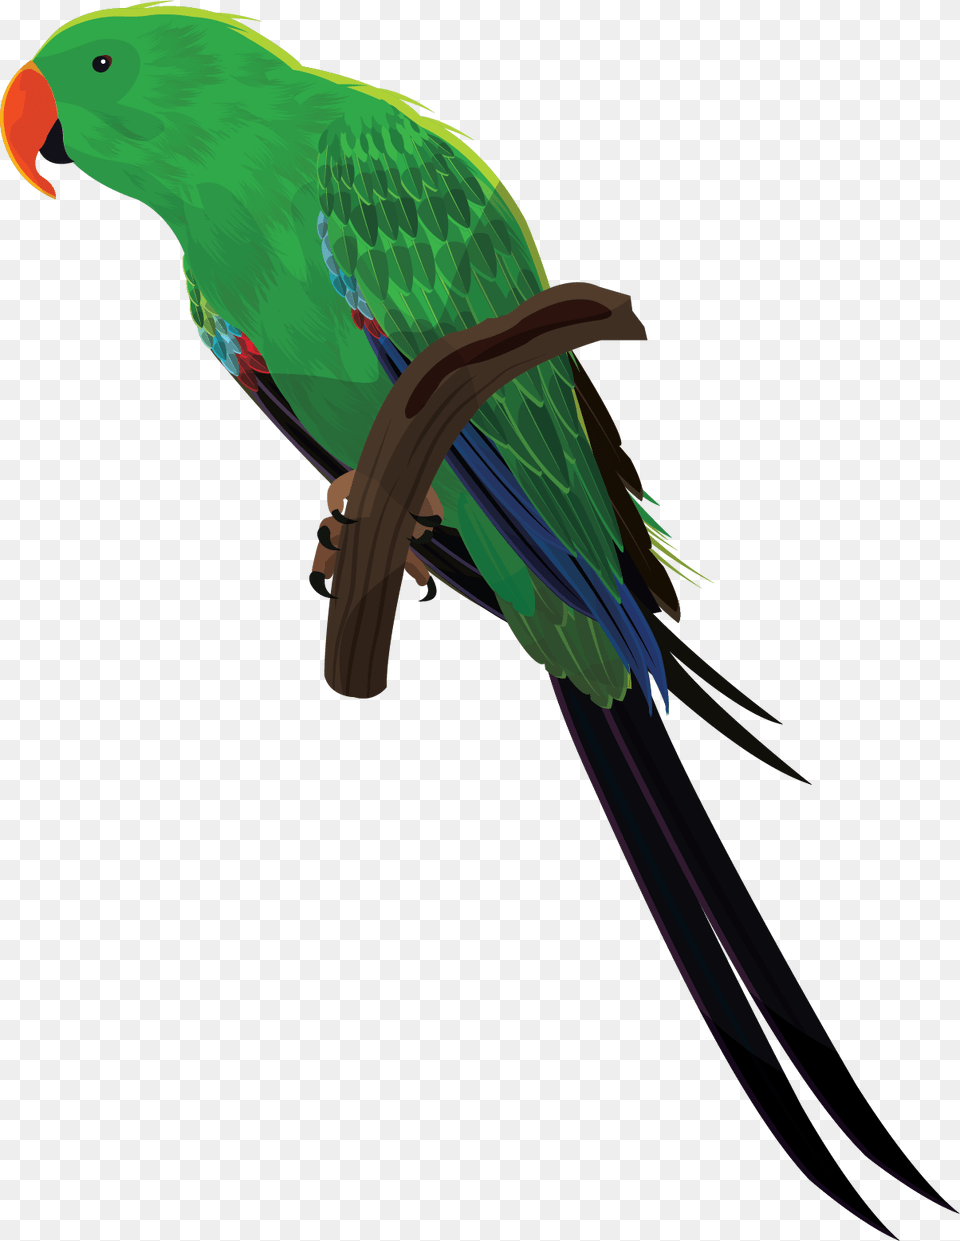 All Birds Images, Animal, Bird, Parakeet, Parrot Png Image